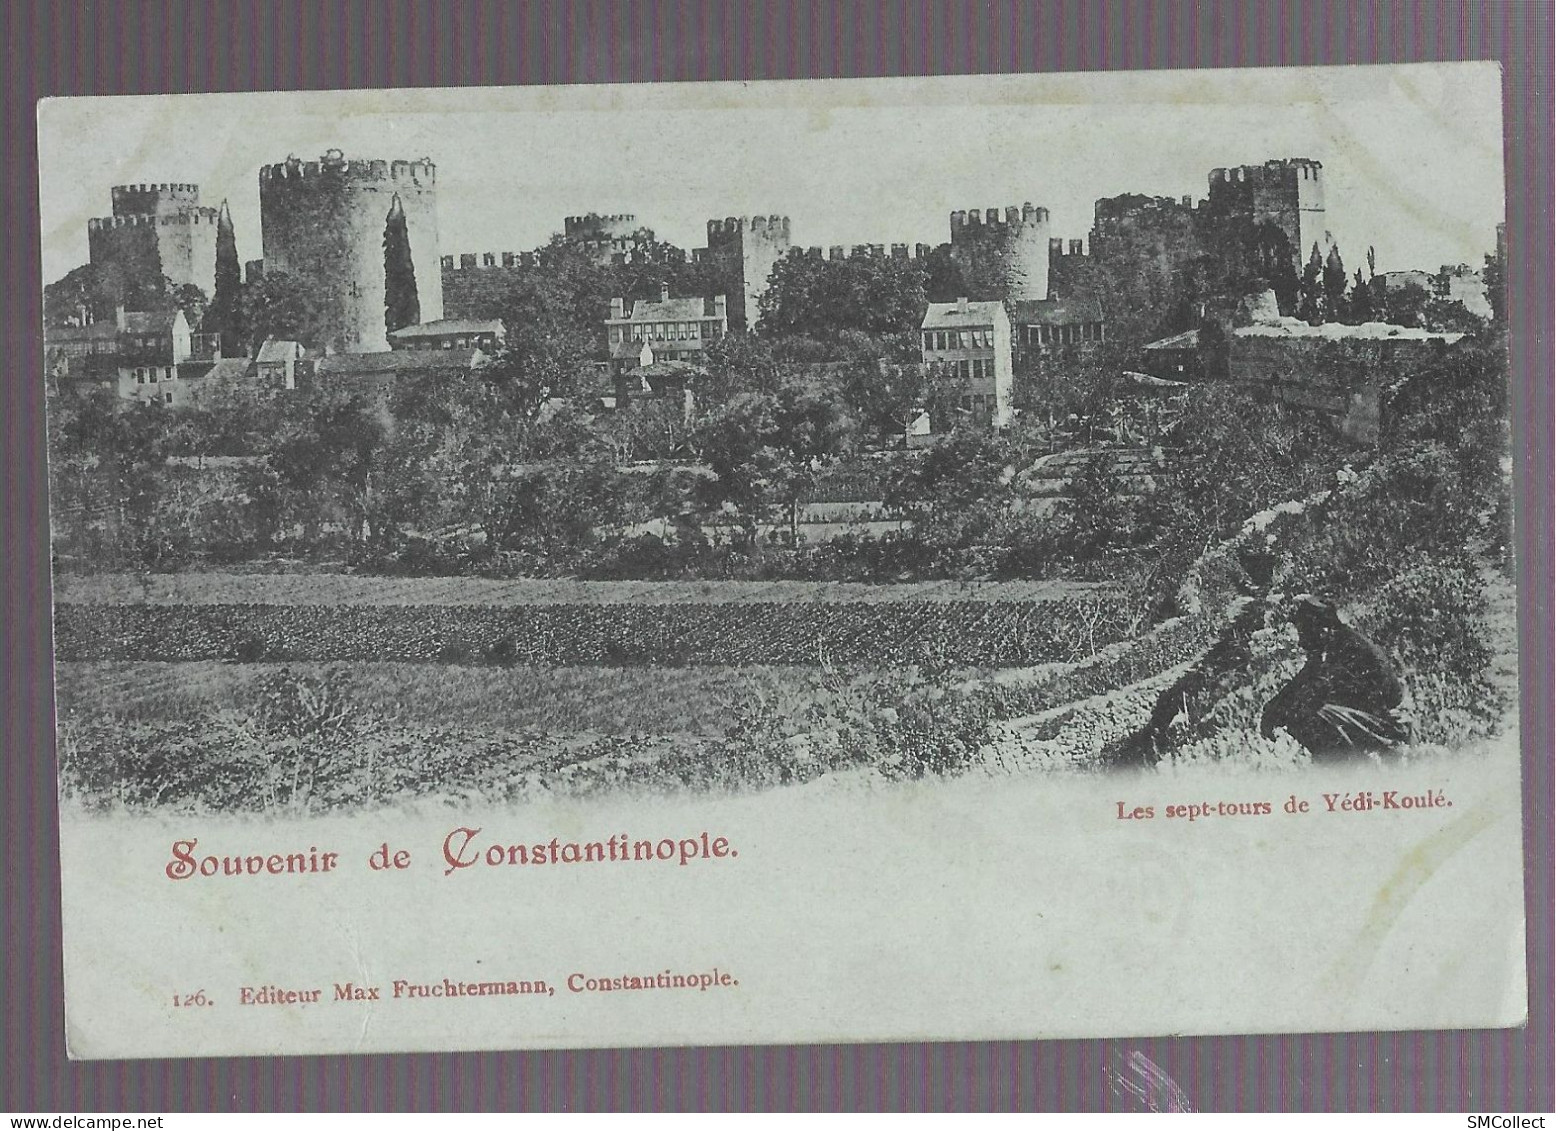 VOIR DESCRIPTION. Souvenir De Constantinople, Les Sept Tours De Yédi-Koulé (9921) - Turkey